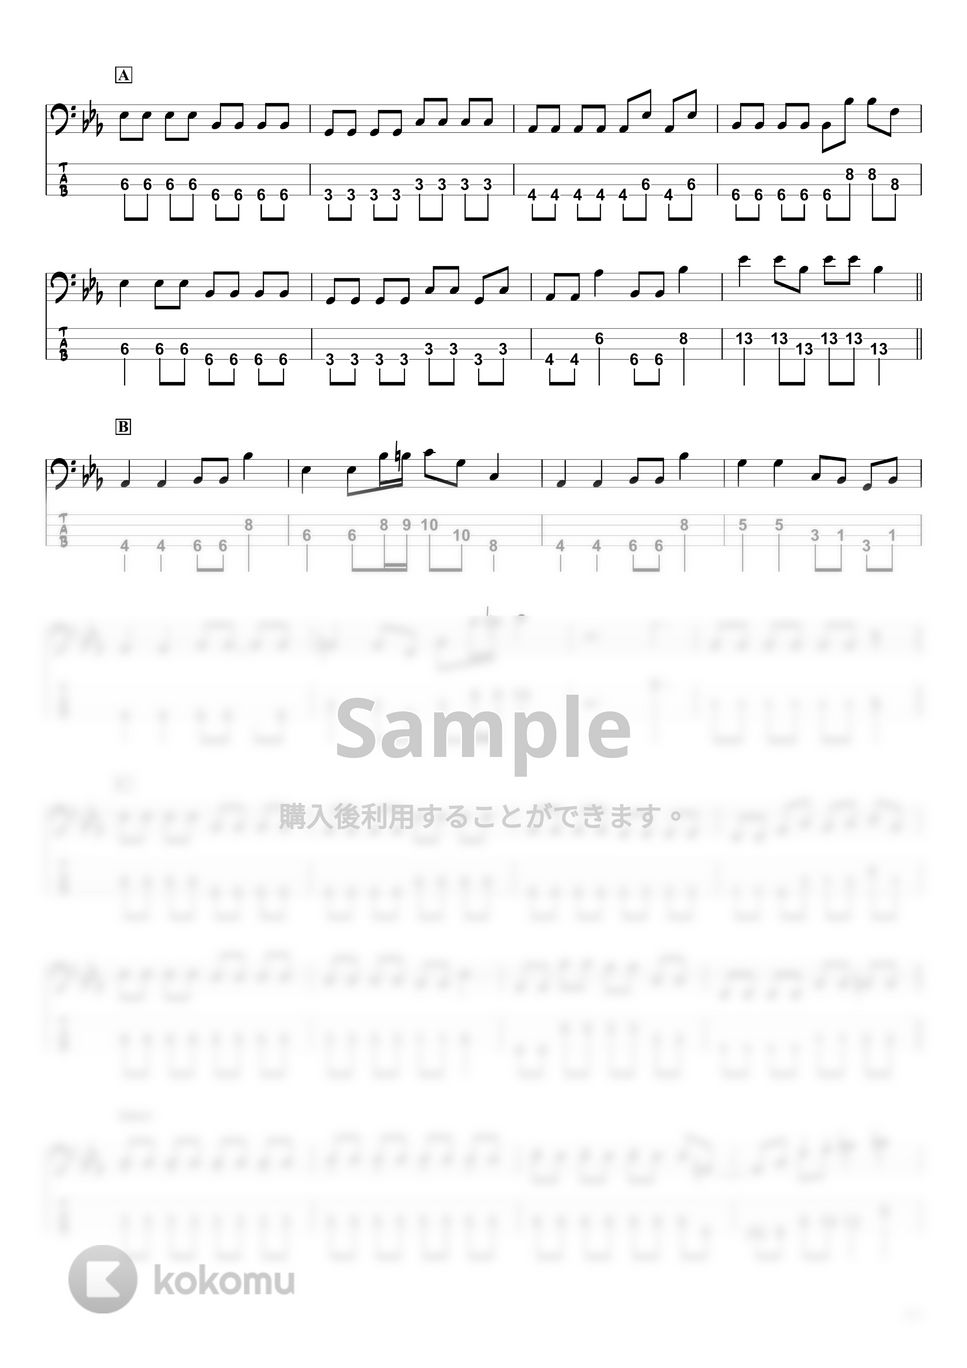 DISH// - 【猫】DISH//『ベースTAB譜』☆4弦ベース対応 by swbass